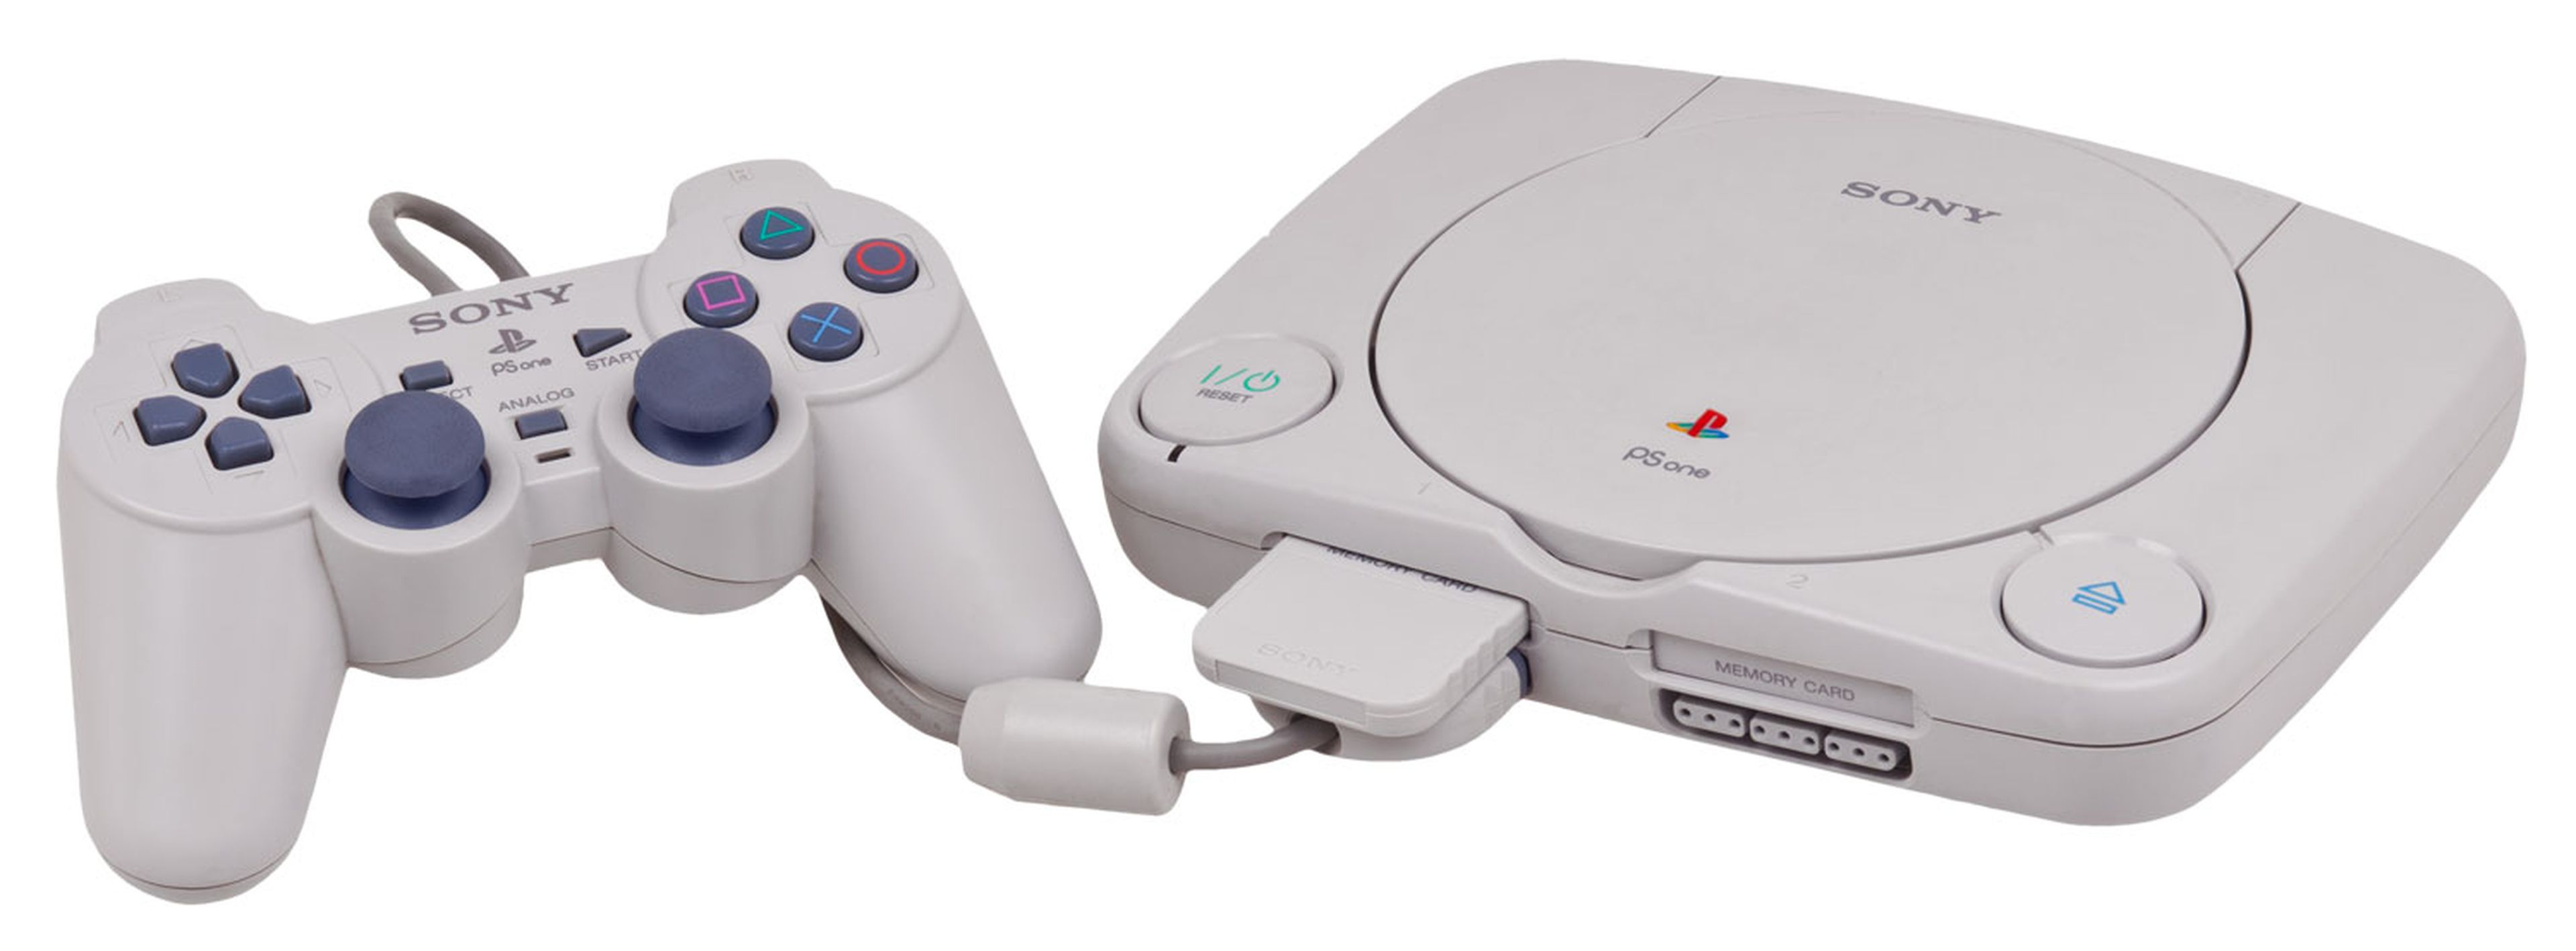 Más pequeñas y barata, PSone alargó la vida útil de PlayStation